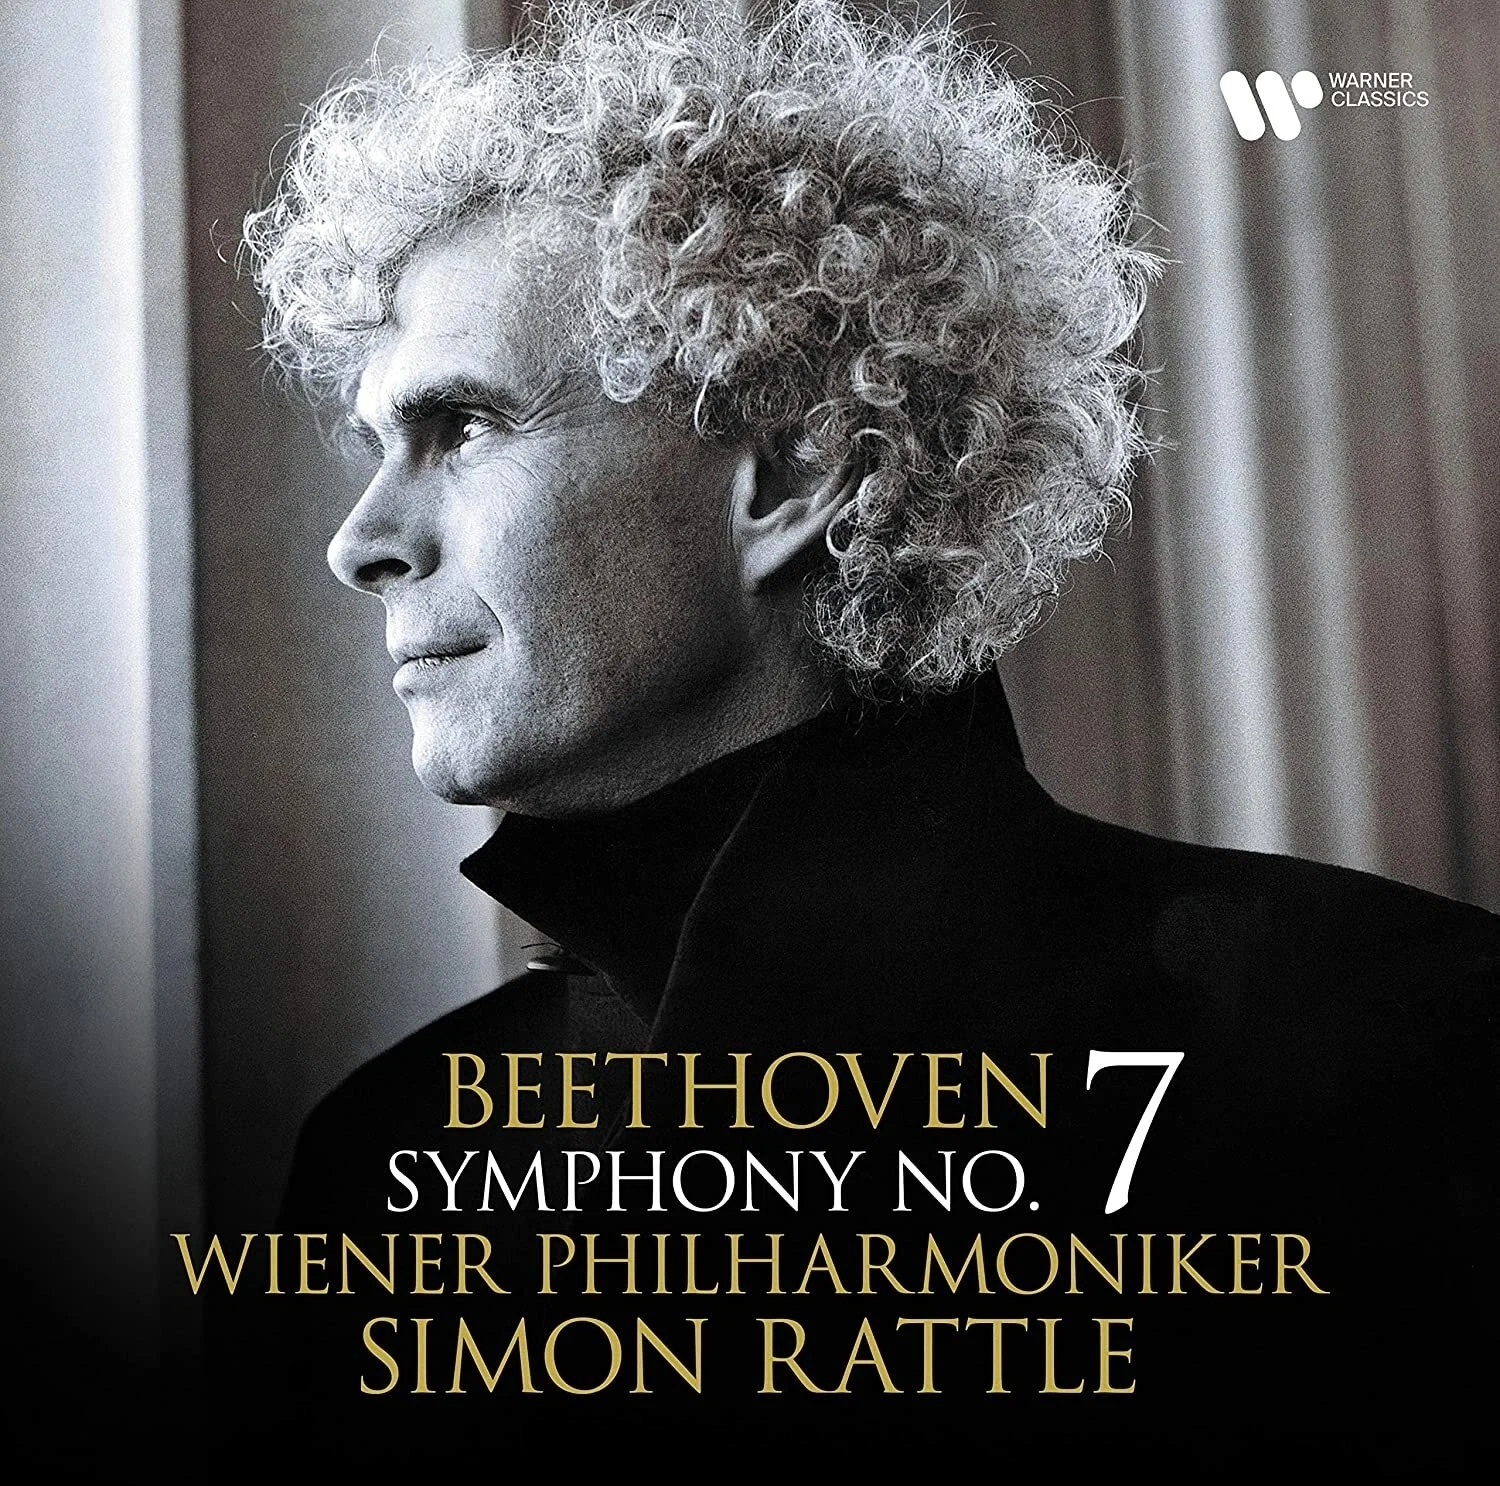 Виниловая Пластинка Rattle, Simon / Wiener Philharmoniker, Beethoven: Symphony No. 7 (5054197376481) фото